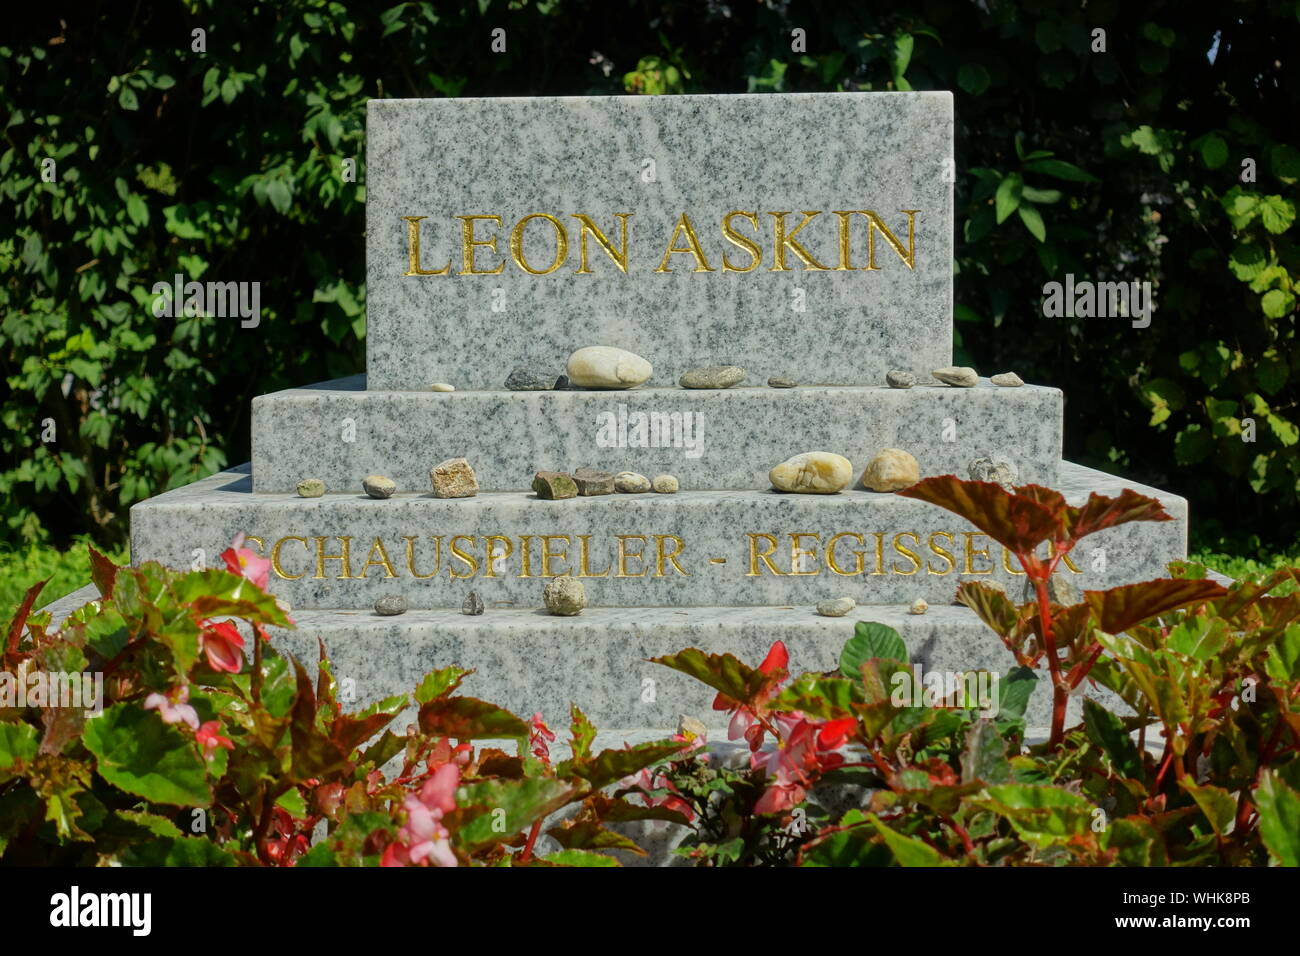 Leon Askin war ein österreichisch-amerikanischer Schauspieler, Schauspiellehrer, direttore cinematografico, Drehbuchautor und Produzent. Foto Stock